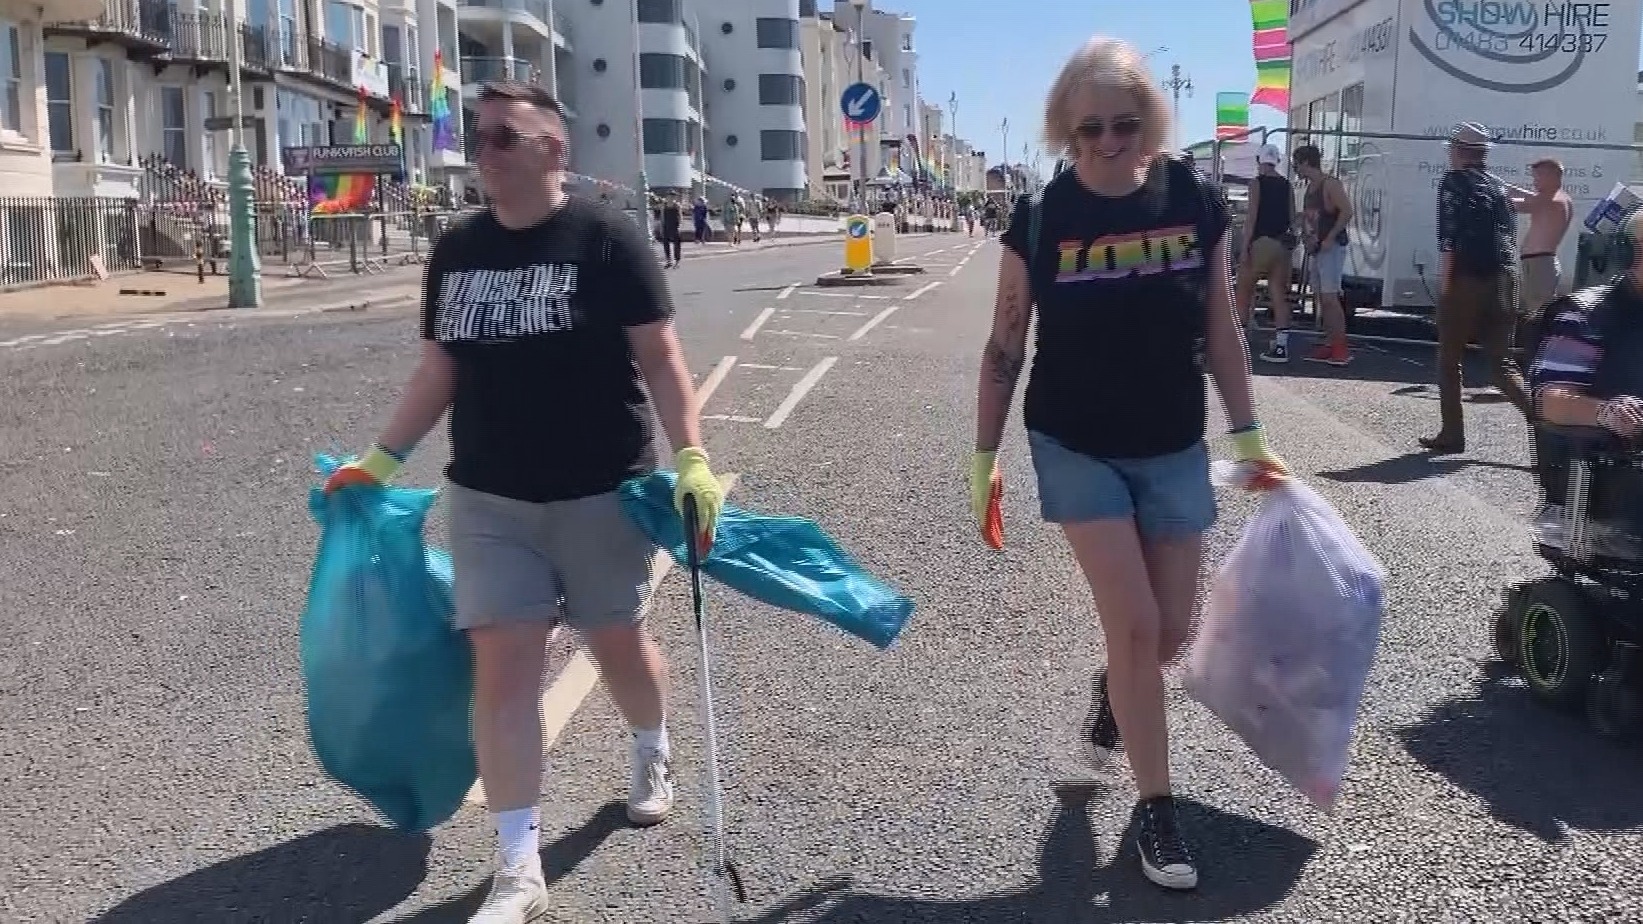 Army of volunteers help clean up litter after Brighton Pride ITV News